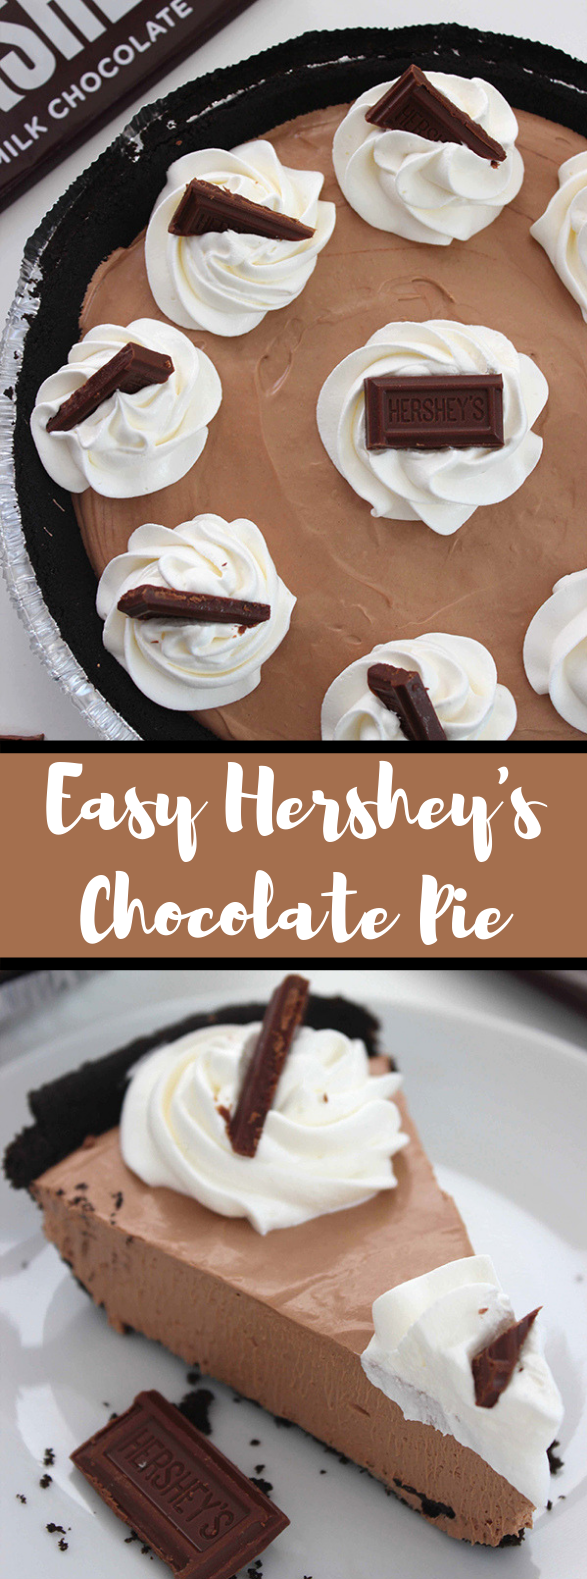 EASY HERSHEY’S CHOCOLATE PIE #Chocolate #Dessert 